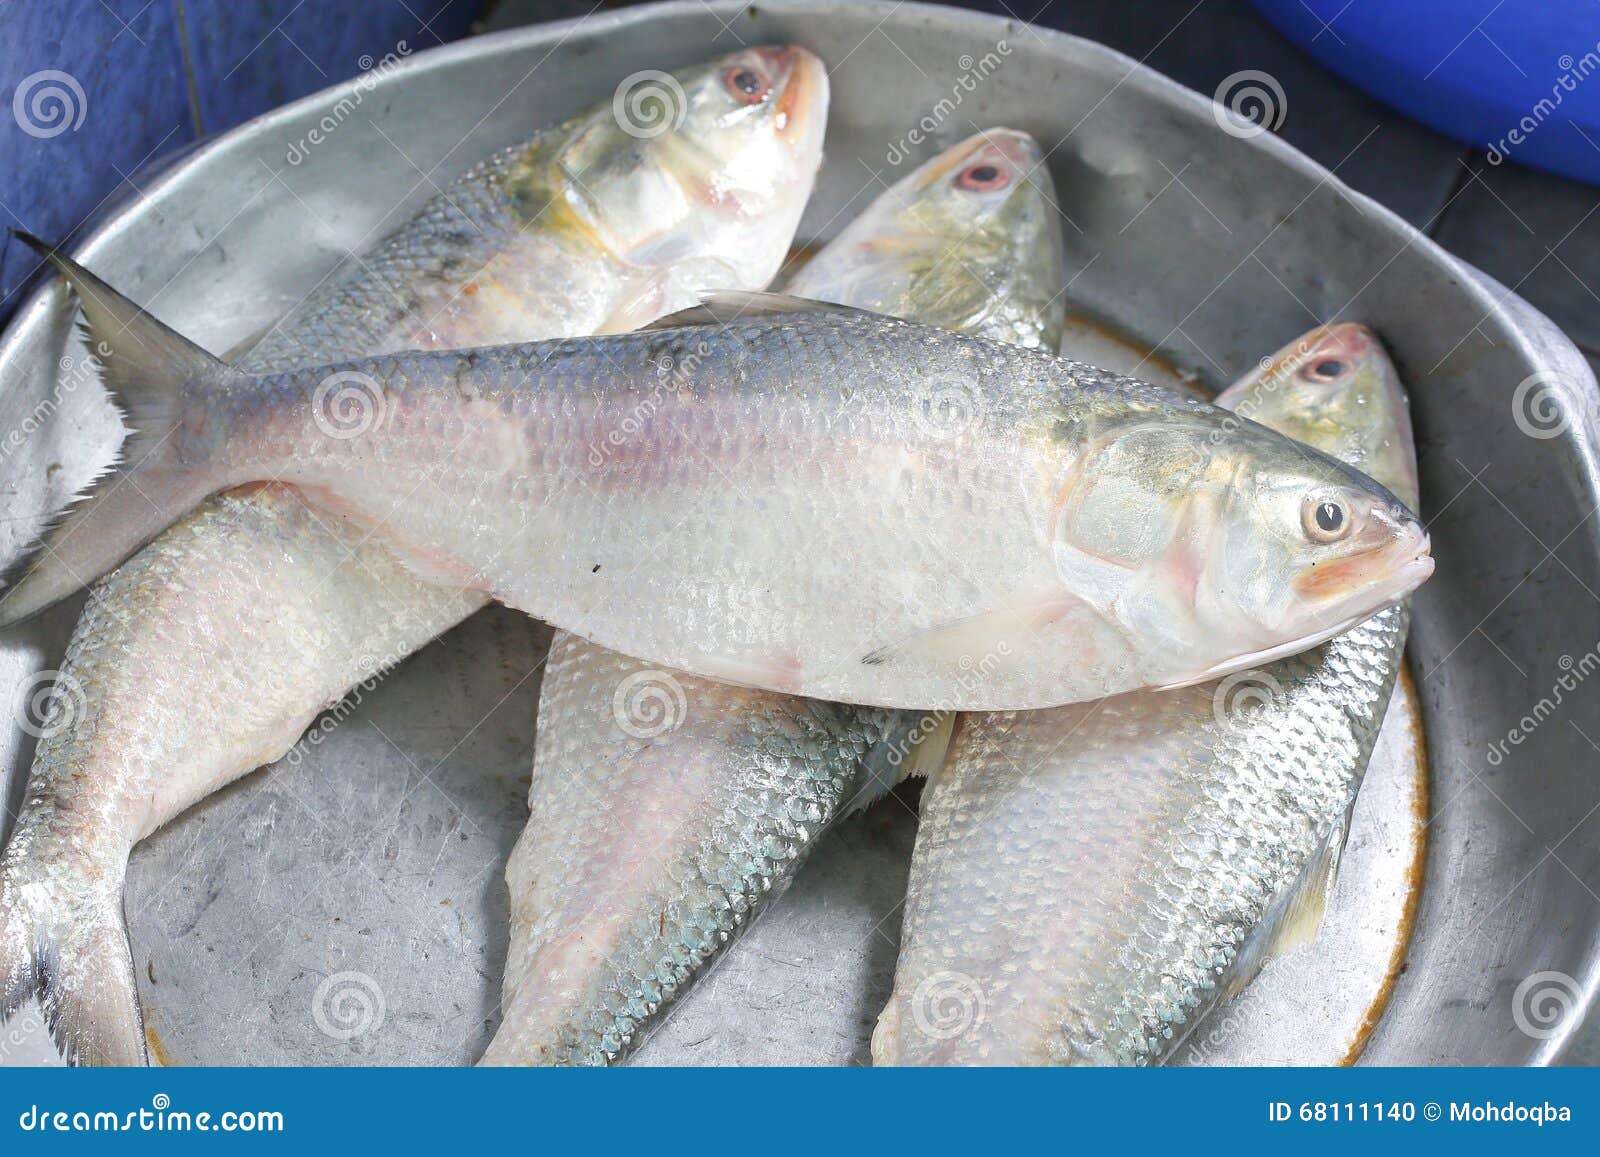 ilish hilsa fish